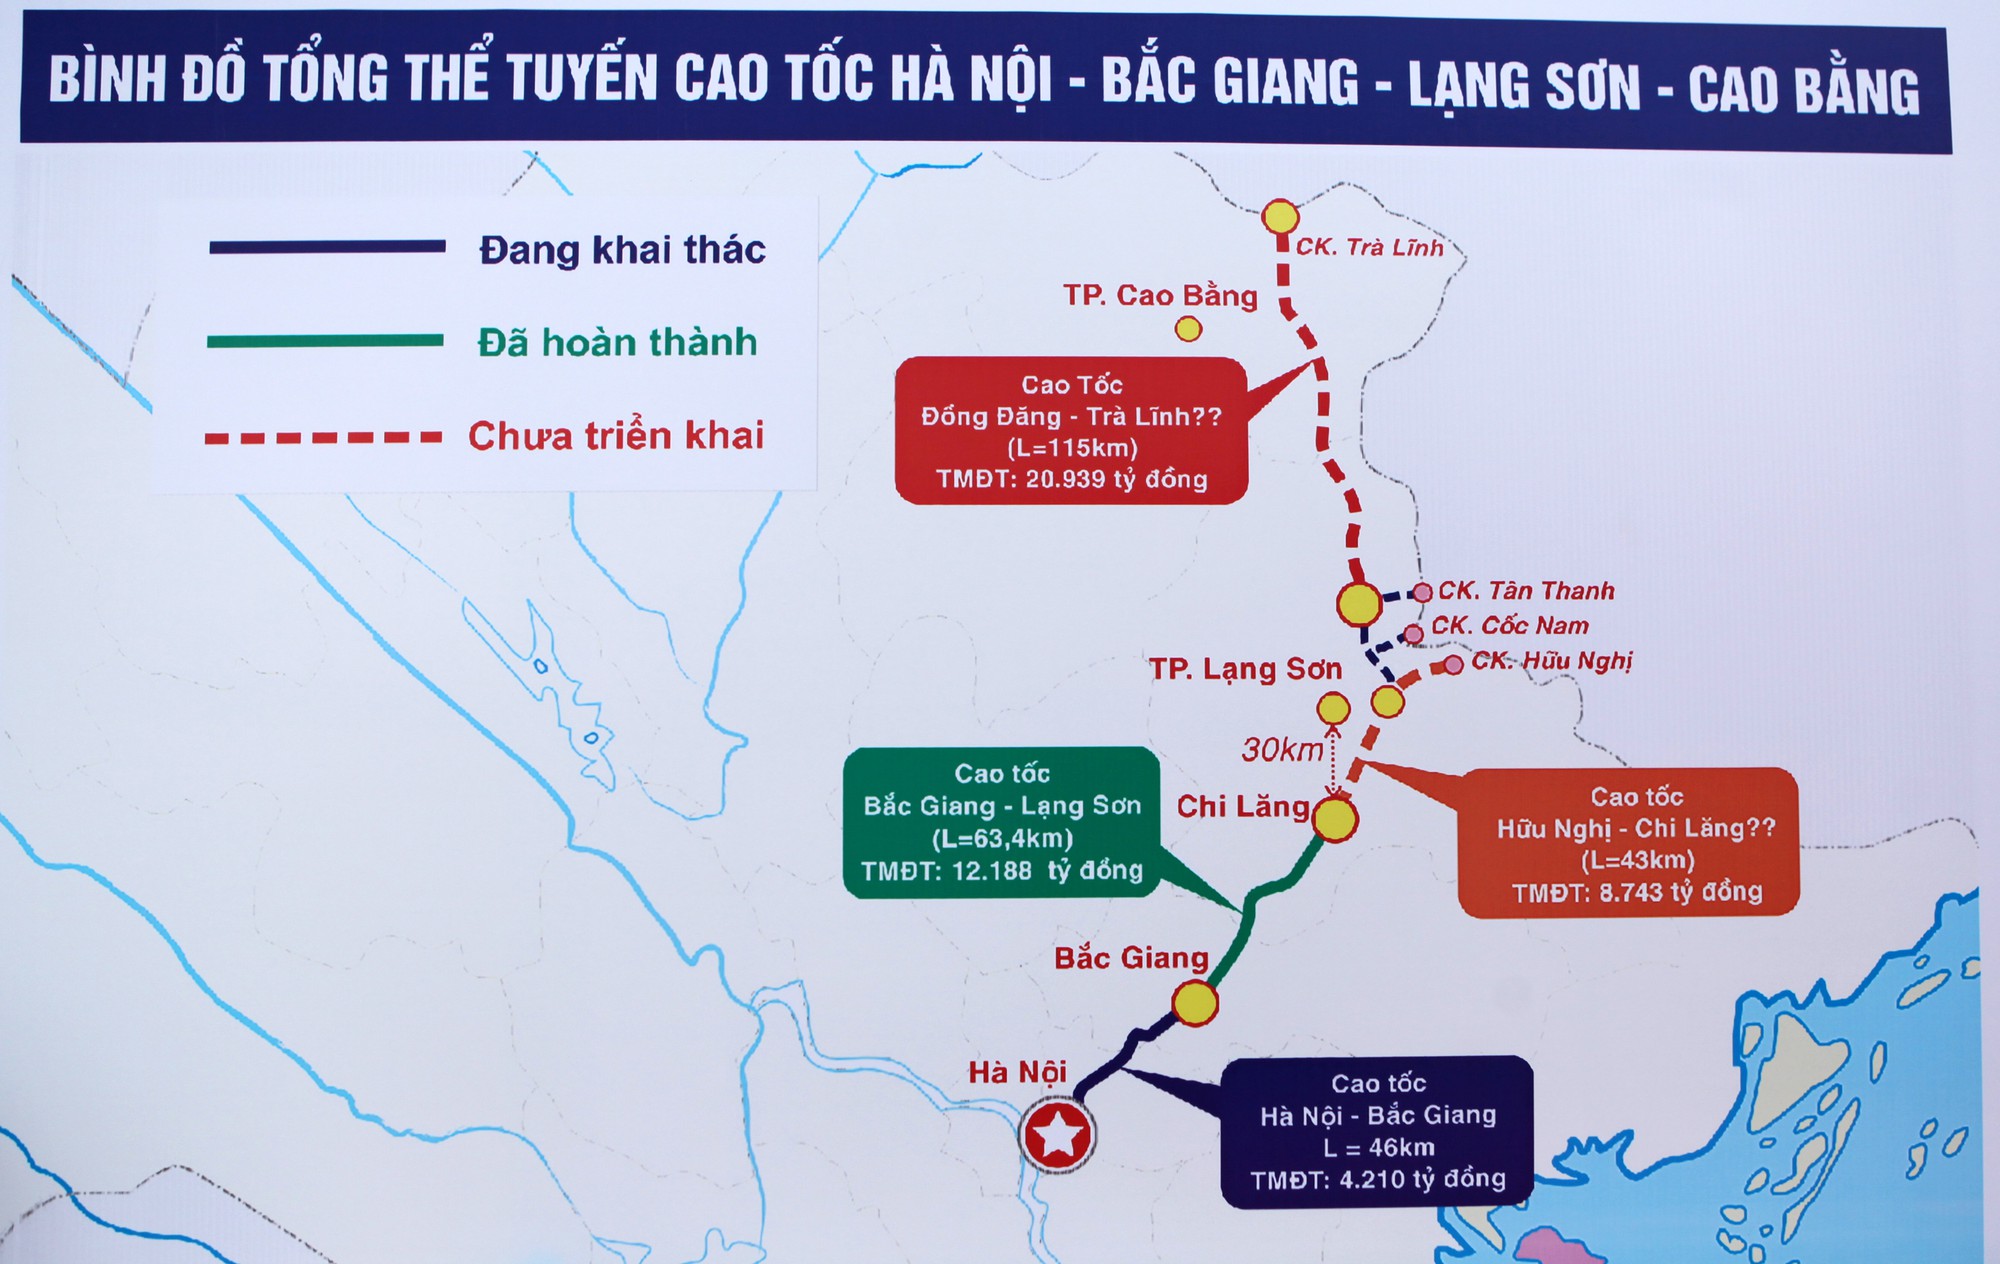 Đường cao tốc Bắc Giang - Lạng Sơn trong mối liên kết với các đường cao tốc Đồng Đăng - Trà Lĩnh (Cao Bằng) trong tương lai.